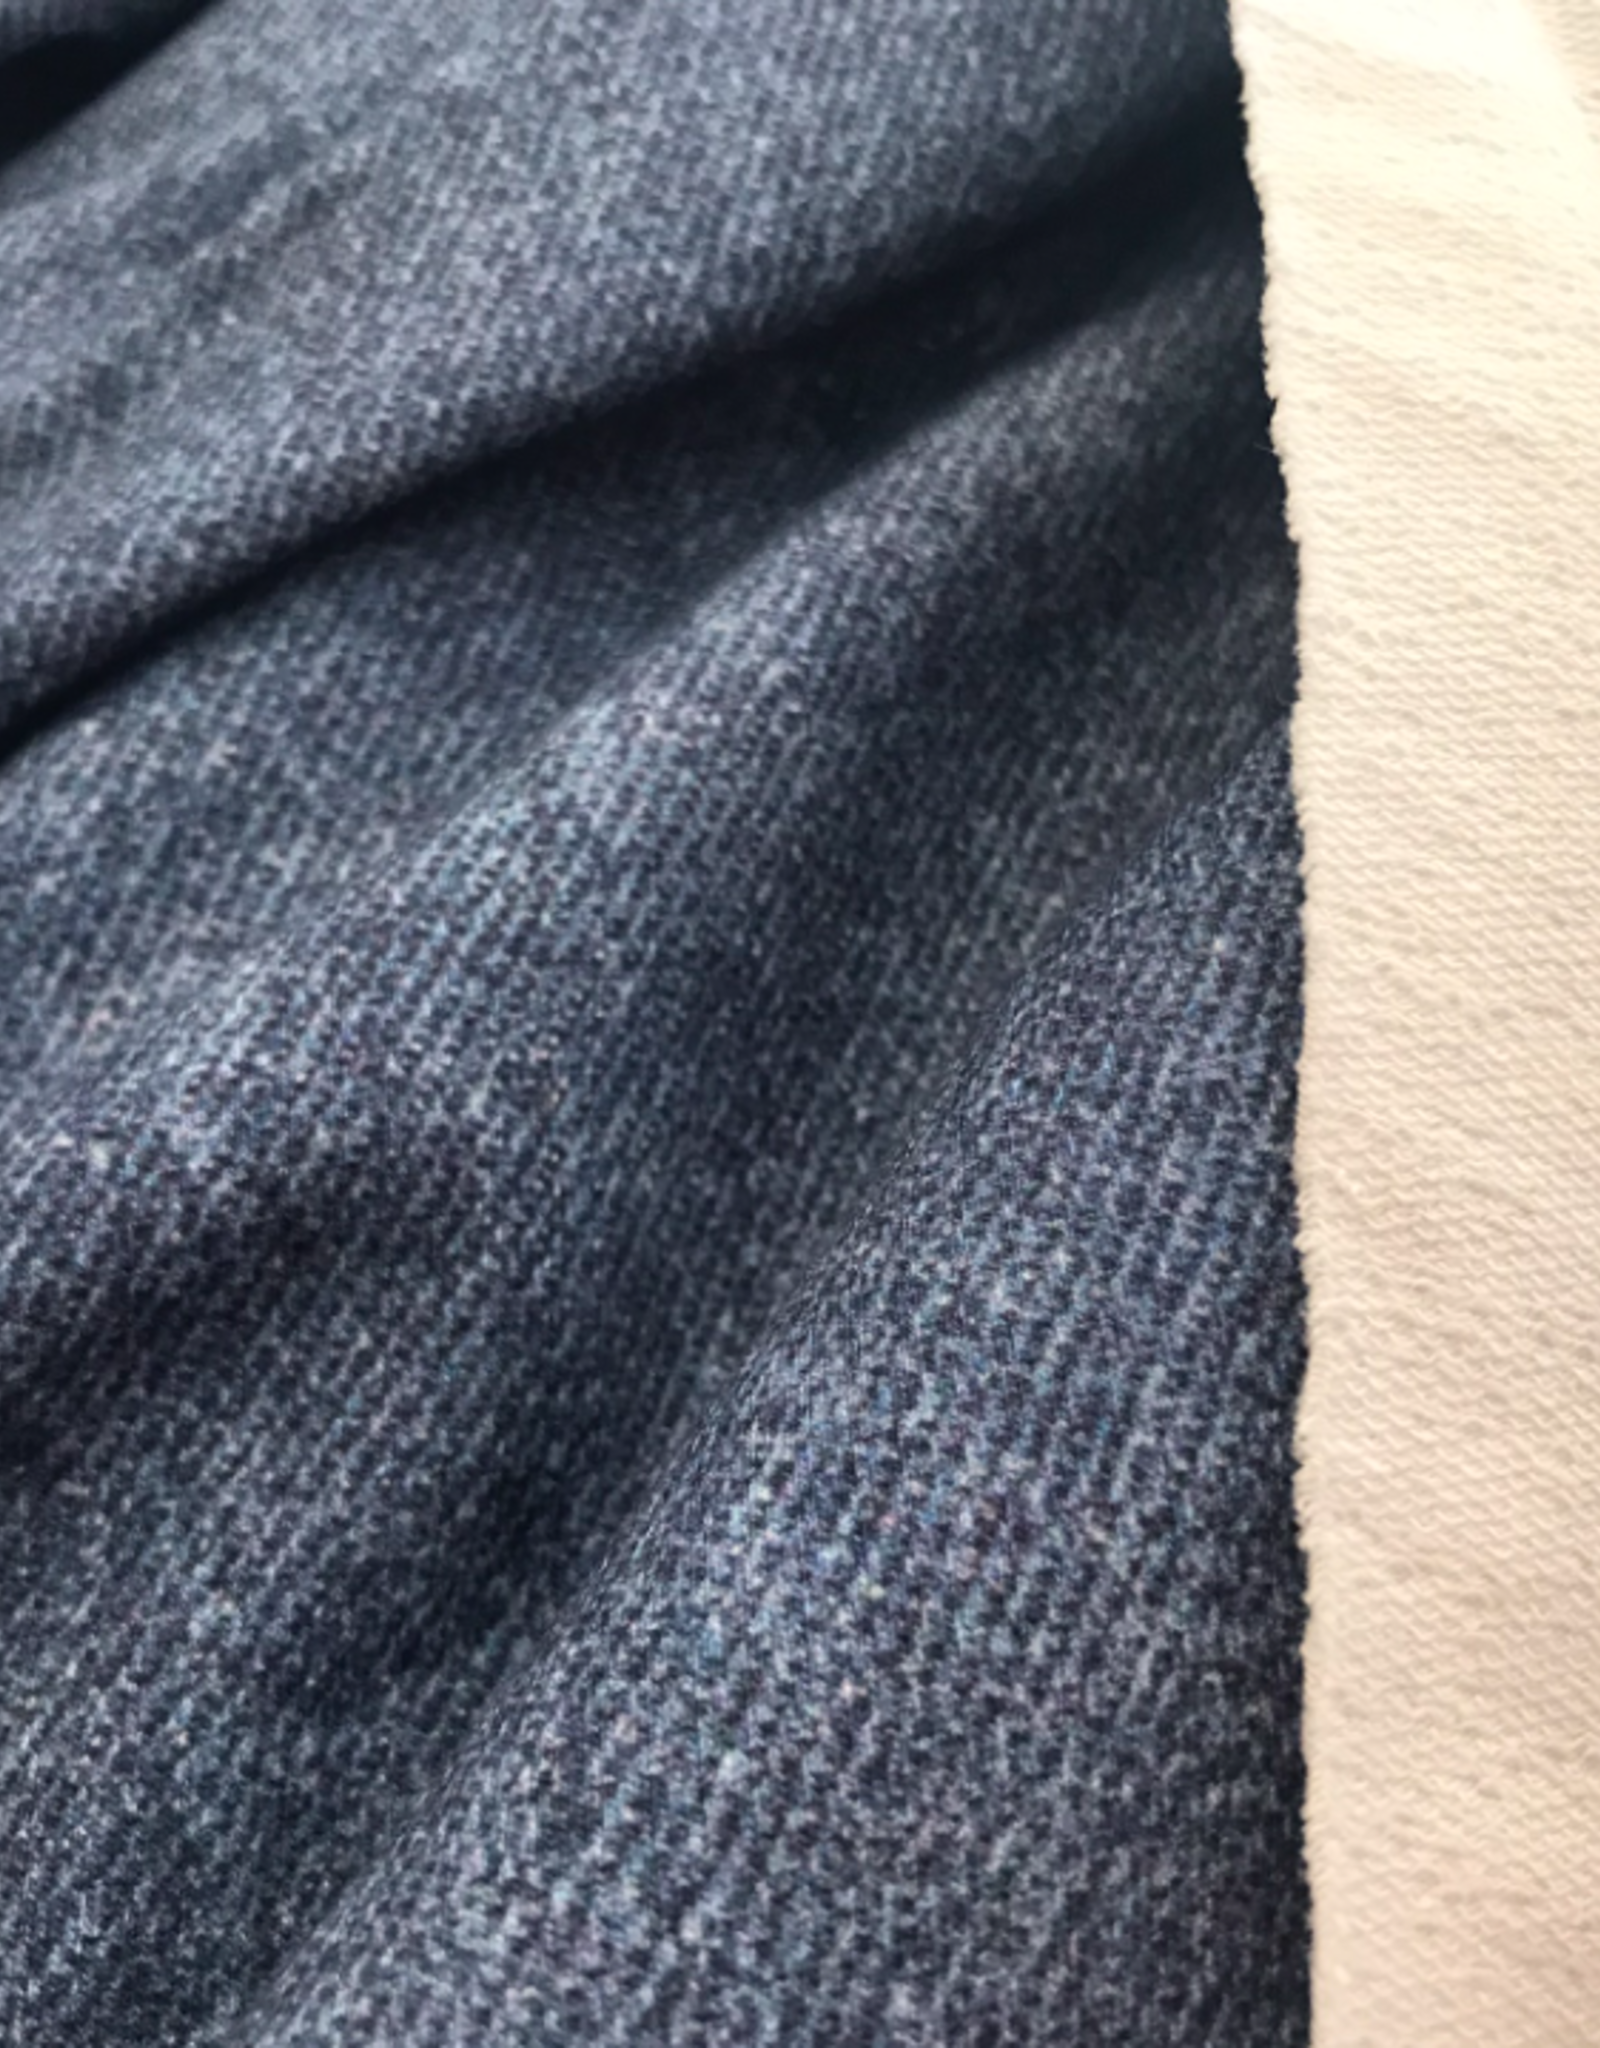 Poppy French Terry GOTS Digital Print Jeans lookalike - blauw